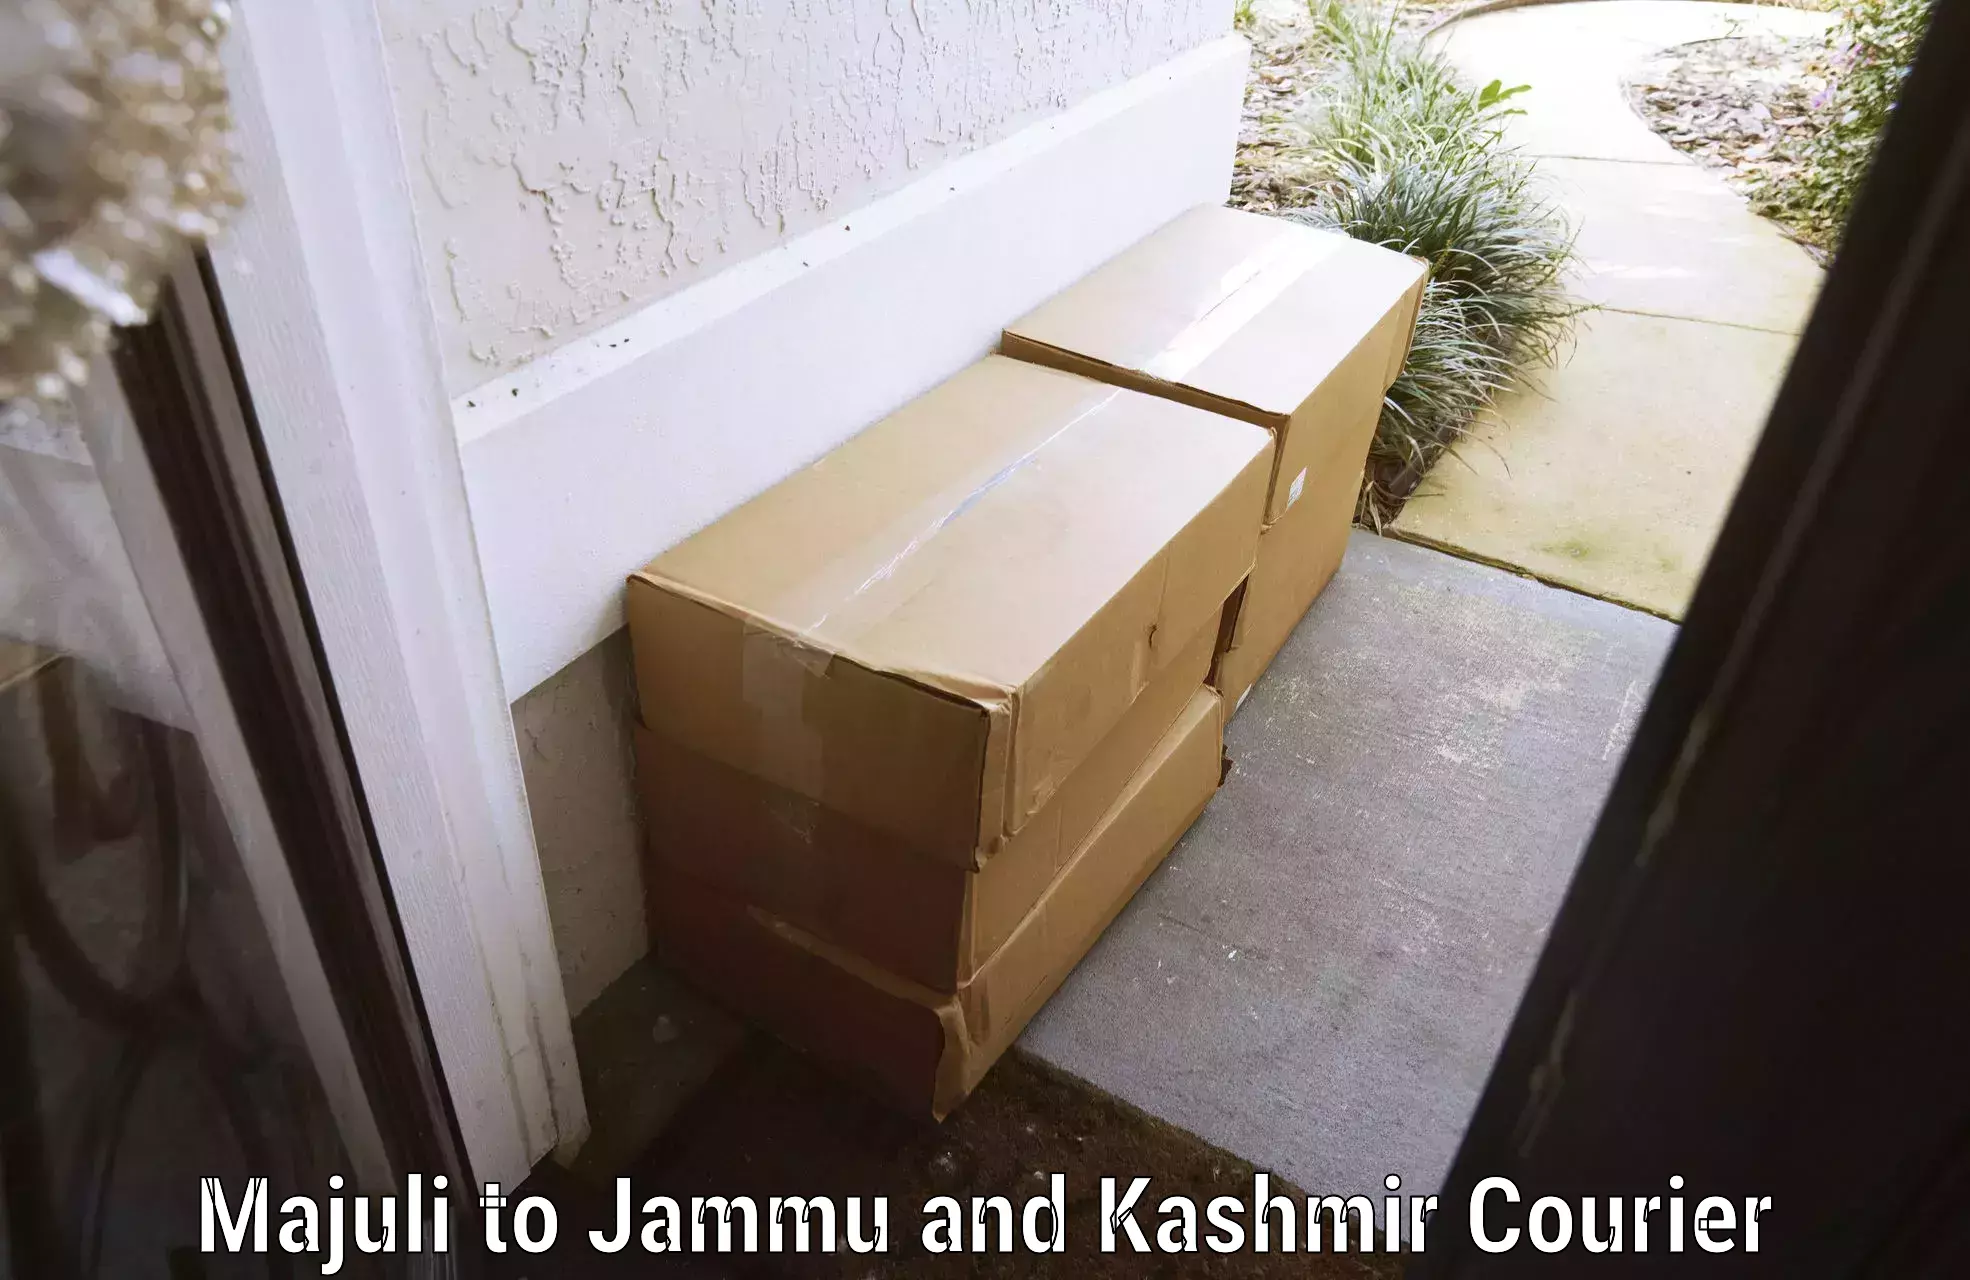 Baggage delivery scheduling Majuli to Srinagar Kashmir